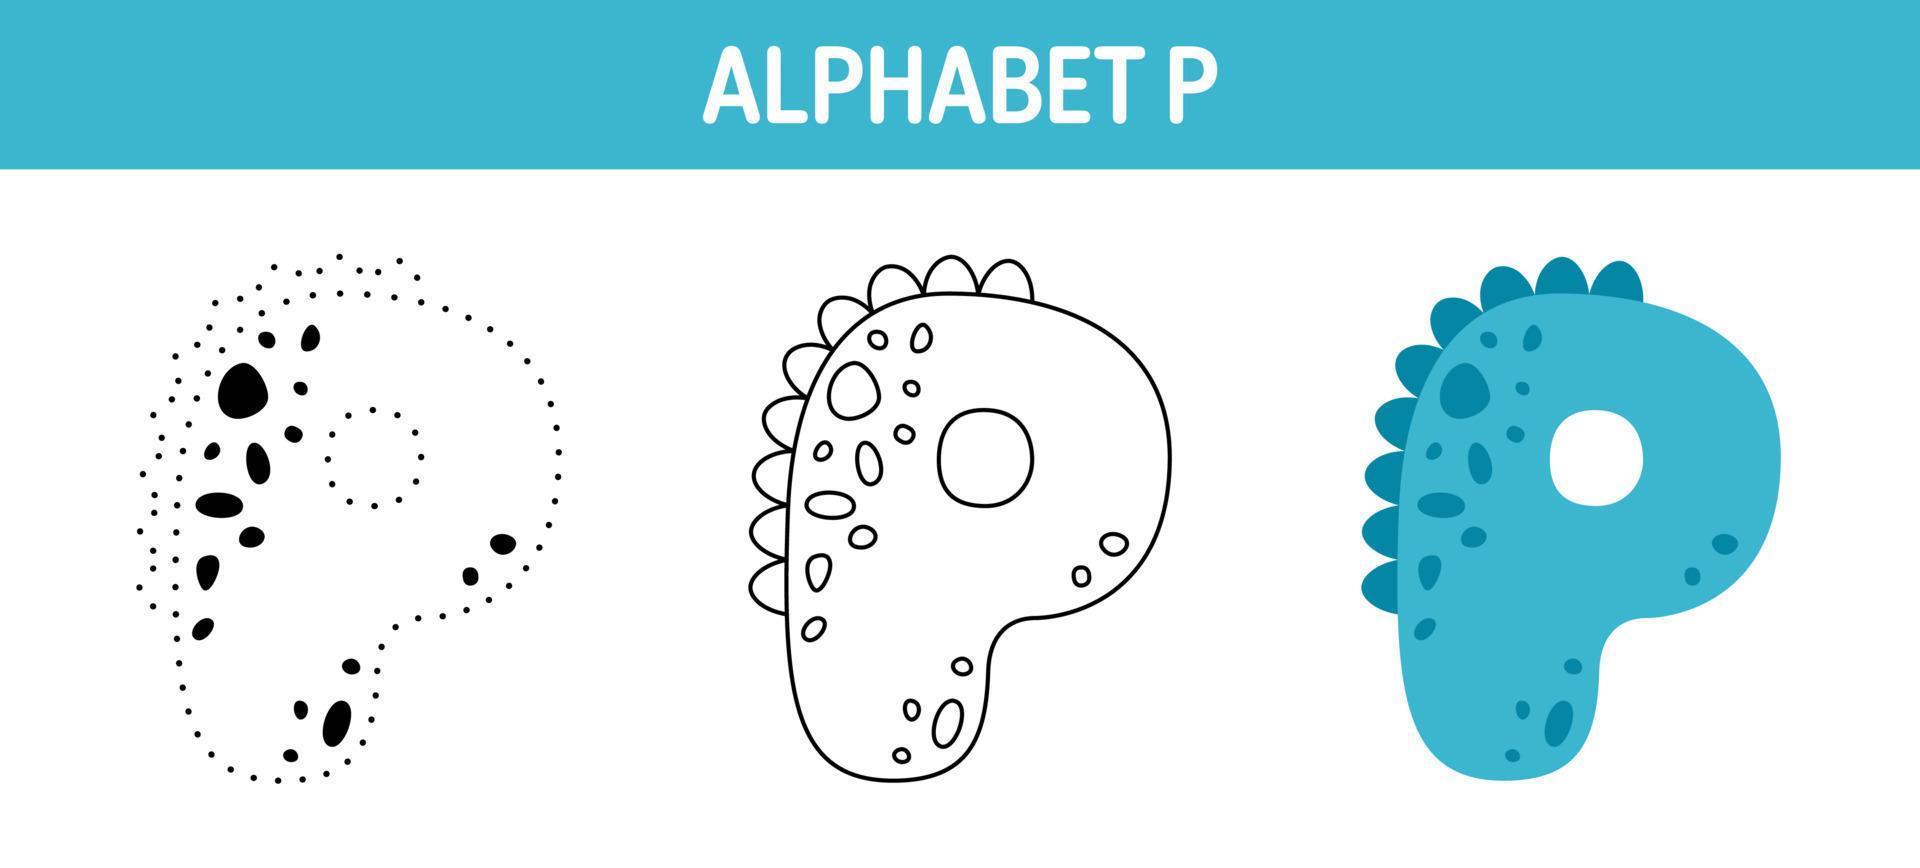 alfabeto p planilha de rastreamento e coloração para crianças vetor